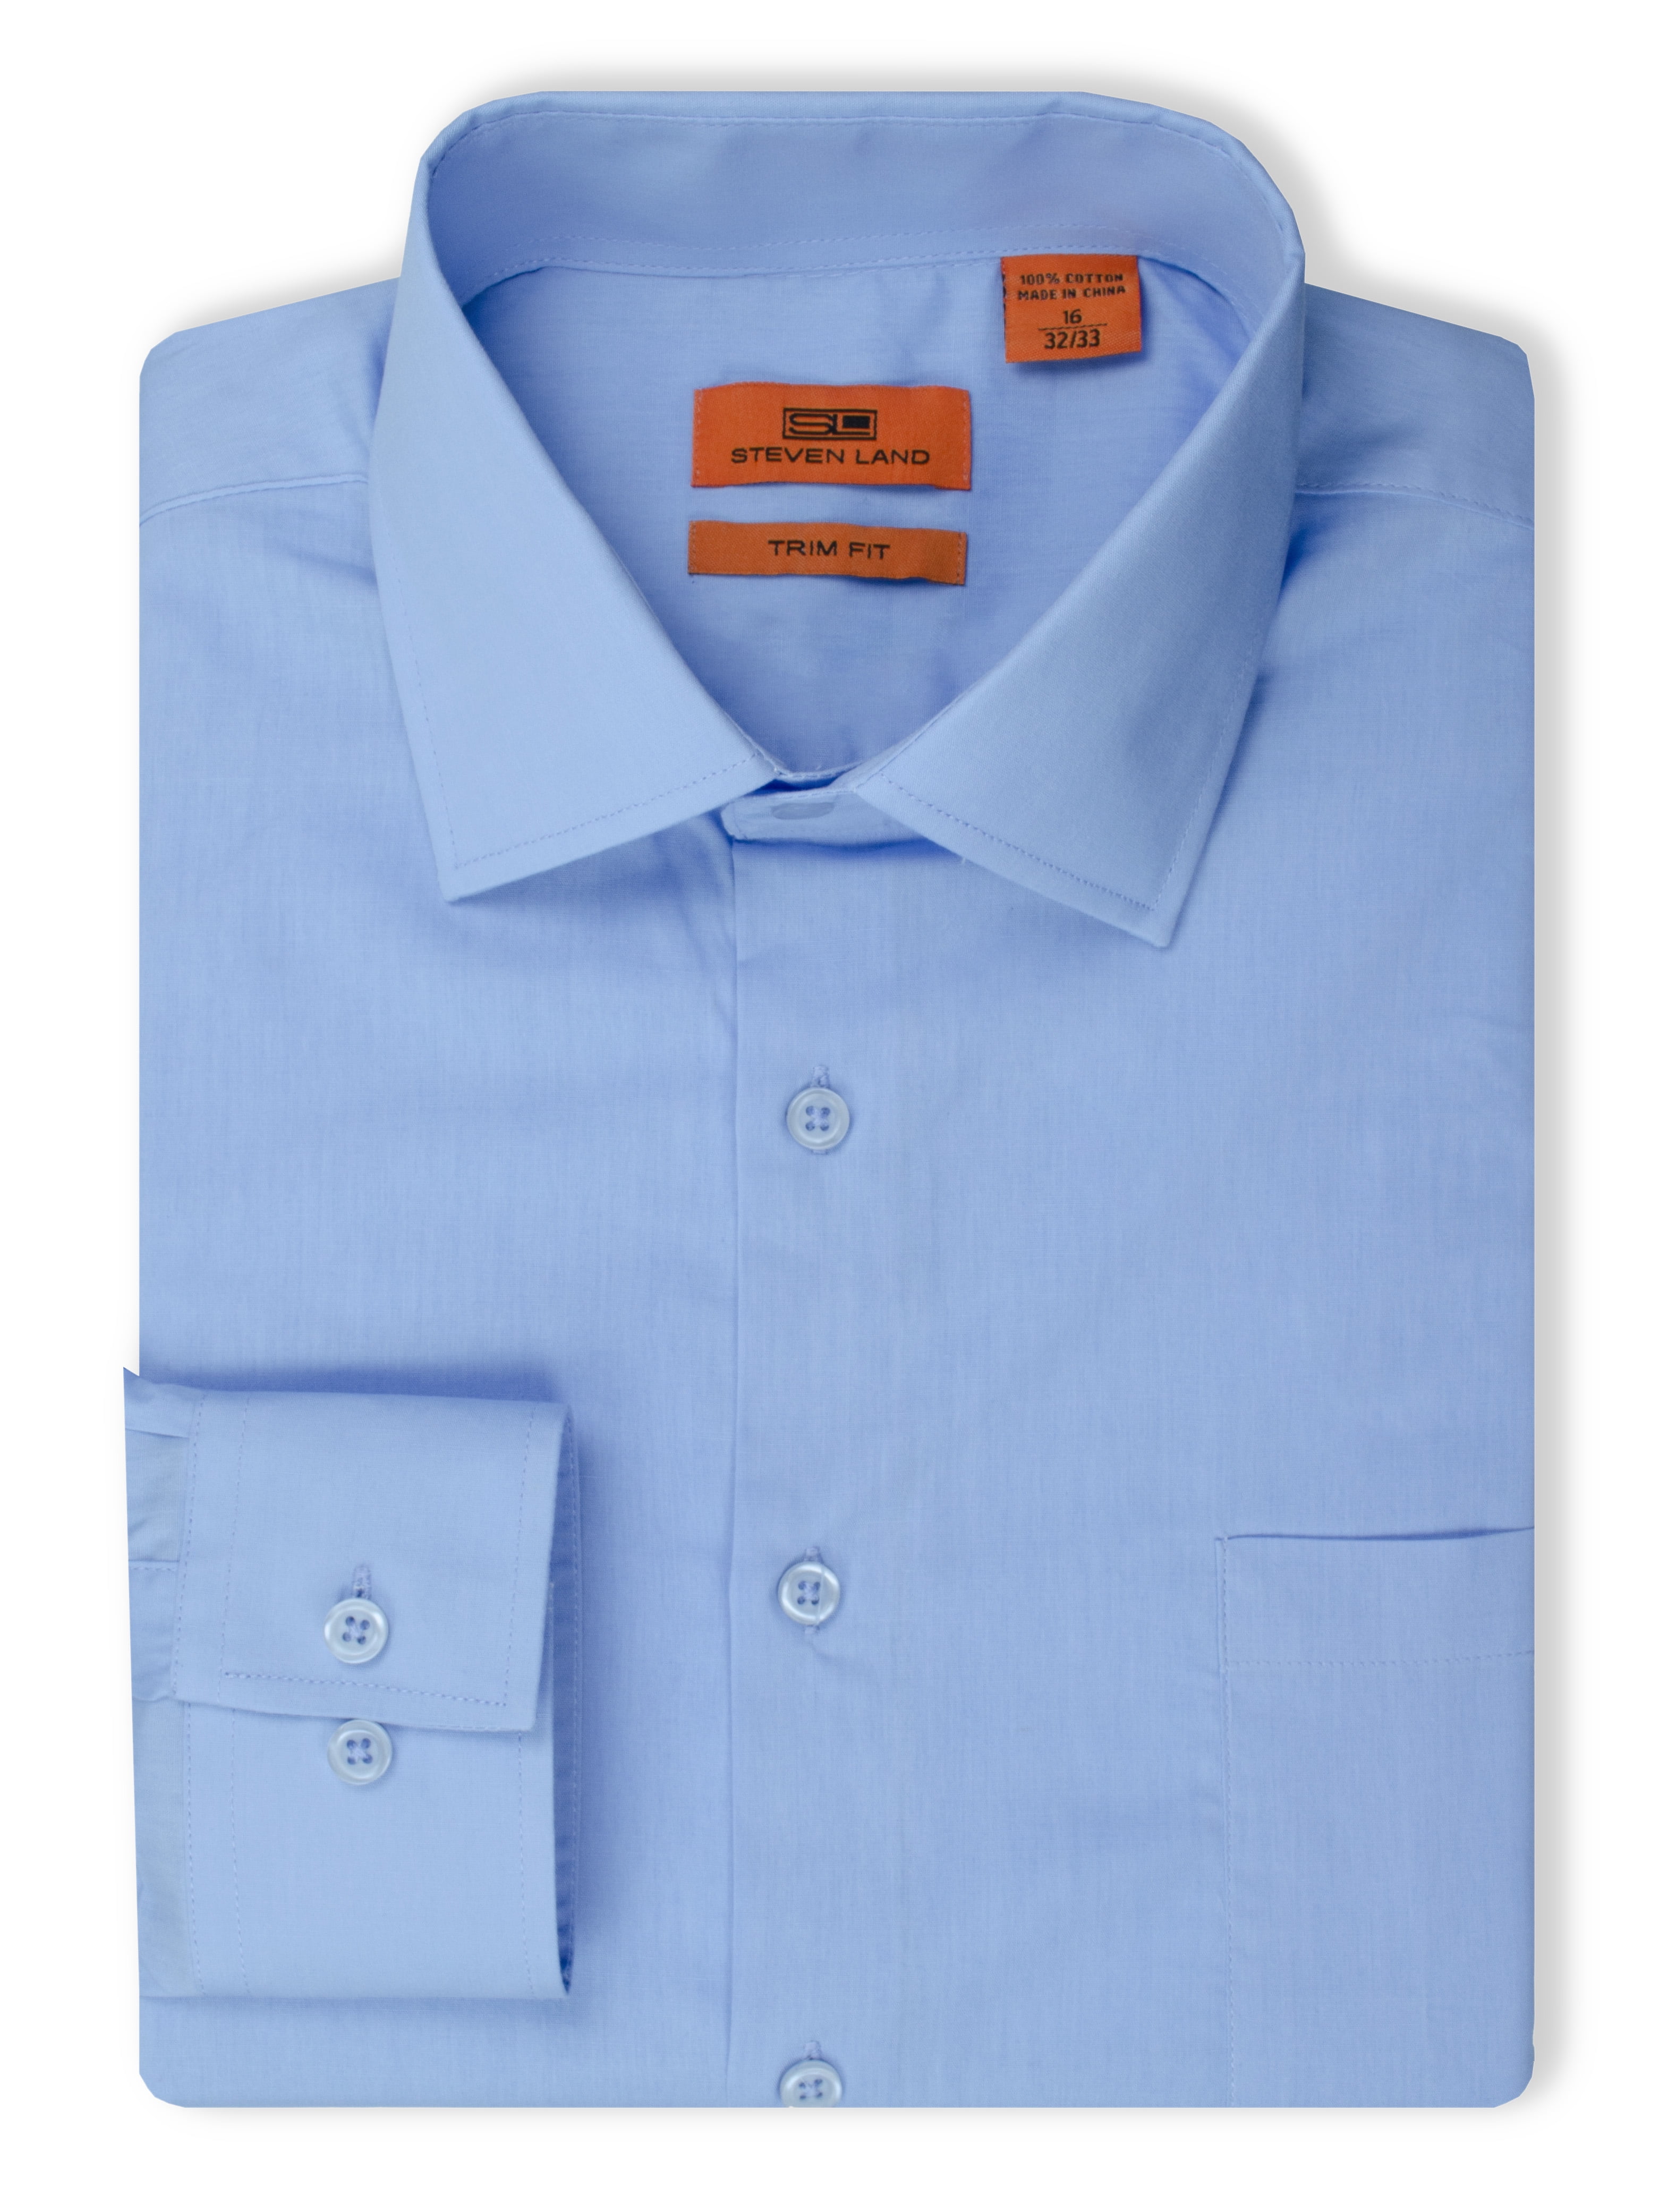 Steven Land Men's Basic 100% Cotton Dress Shirt - Walmart.com